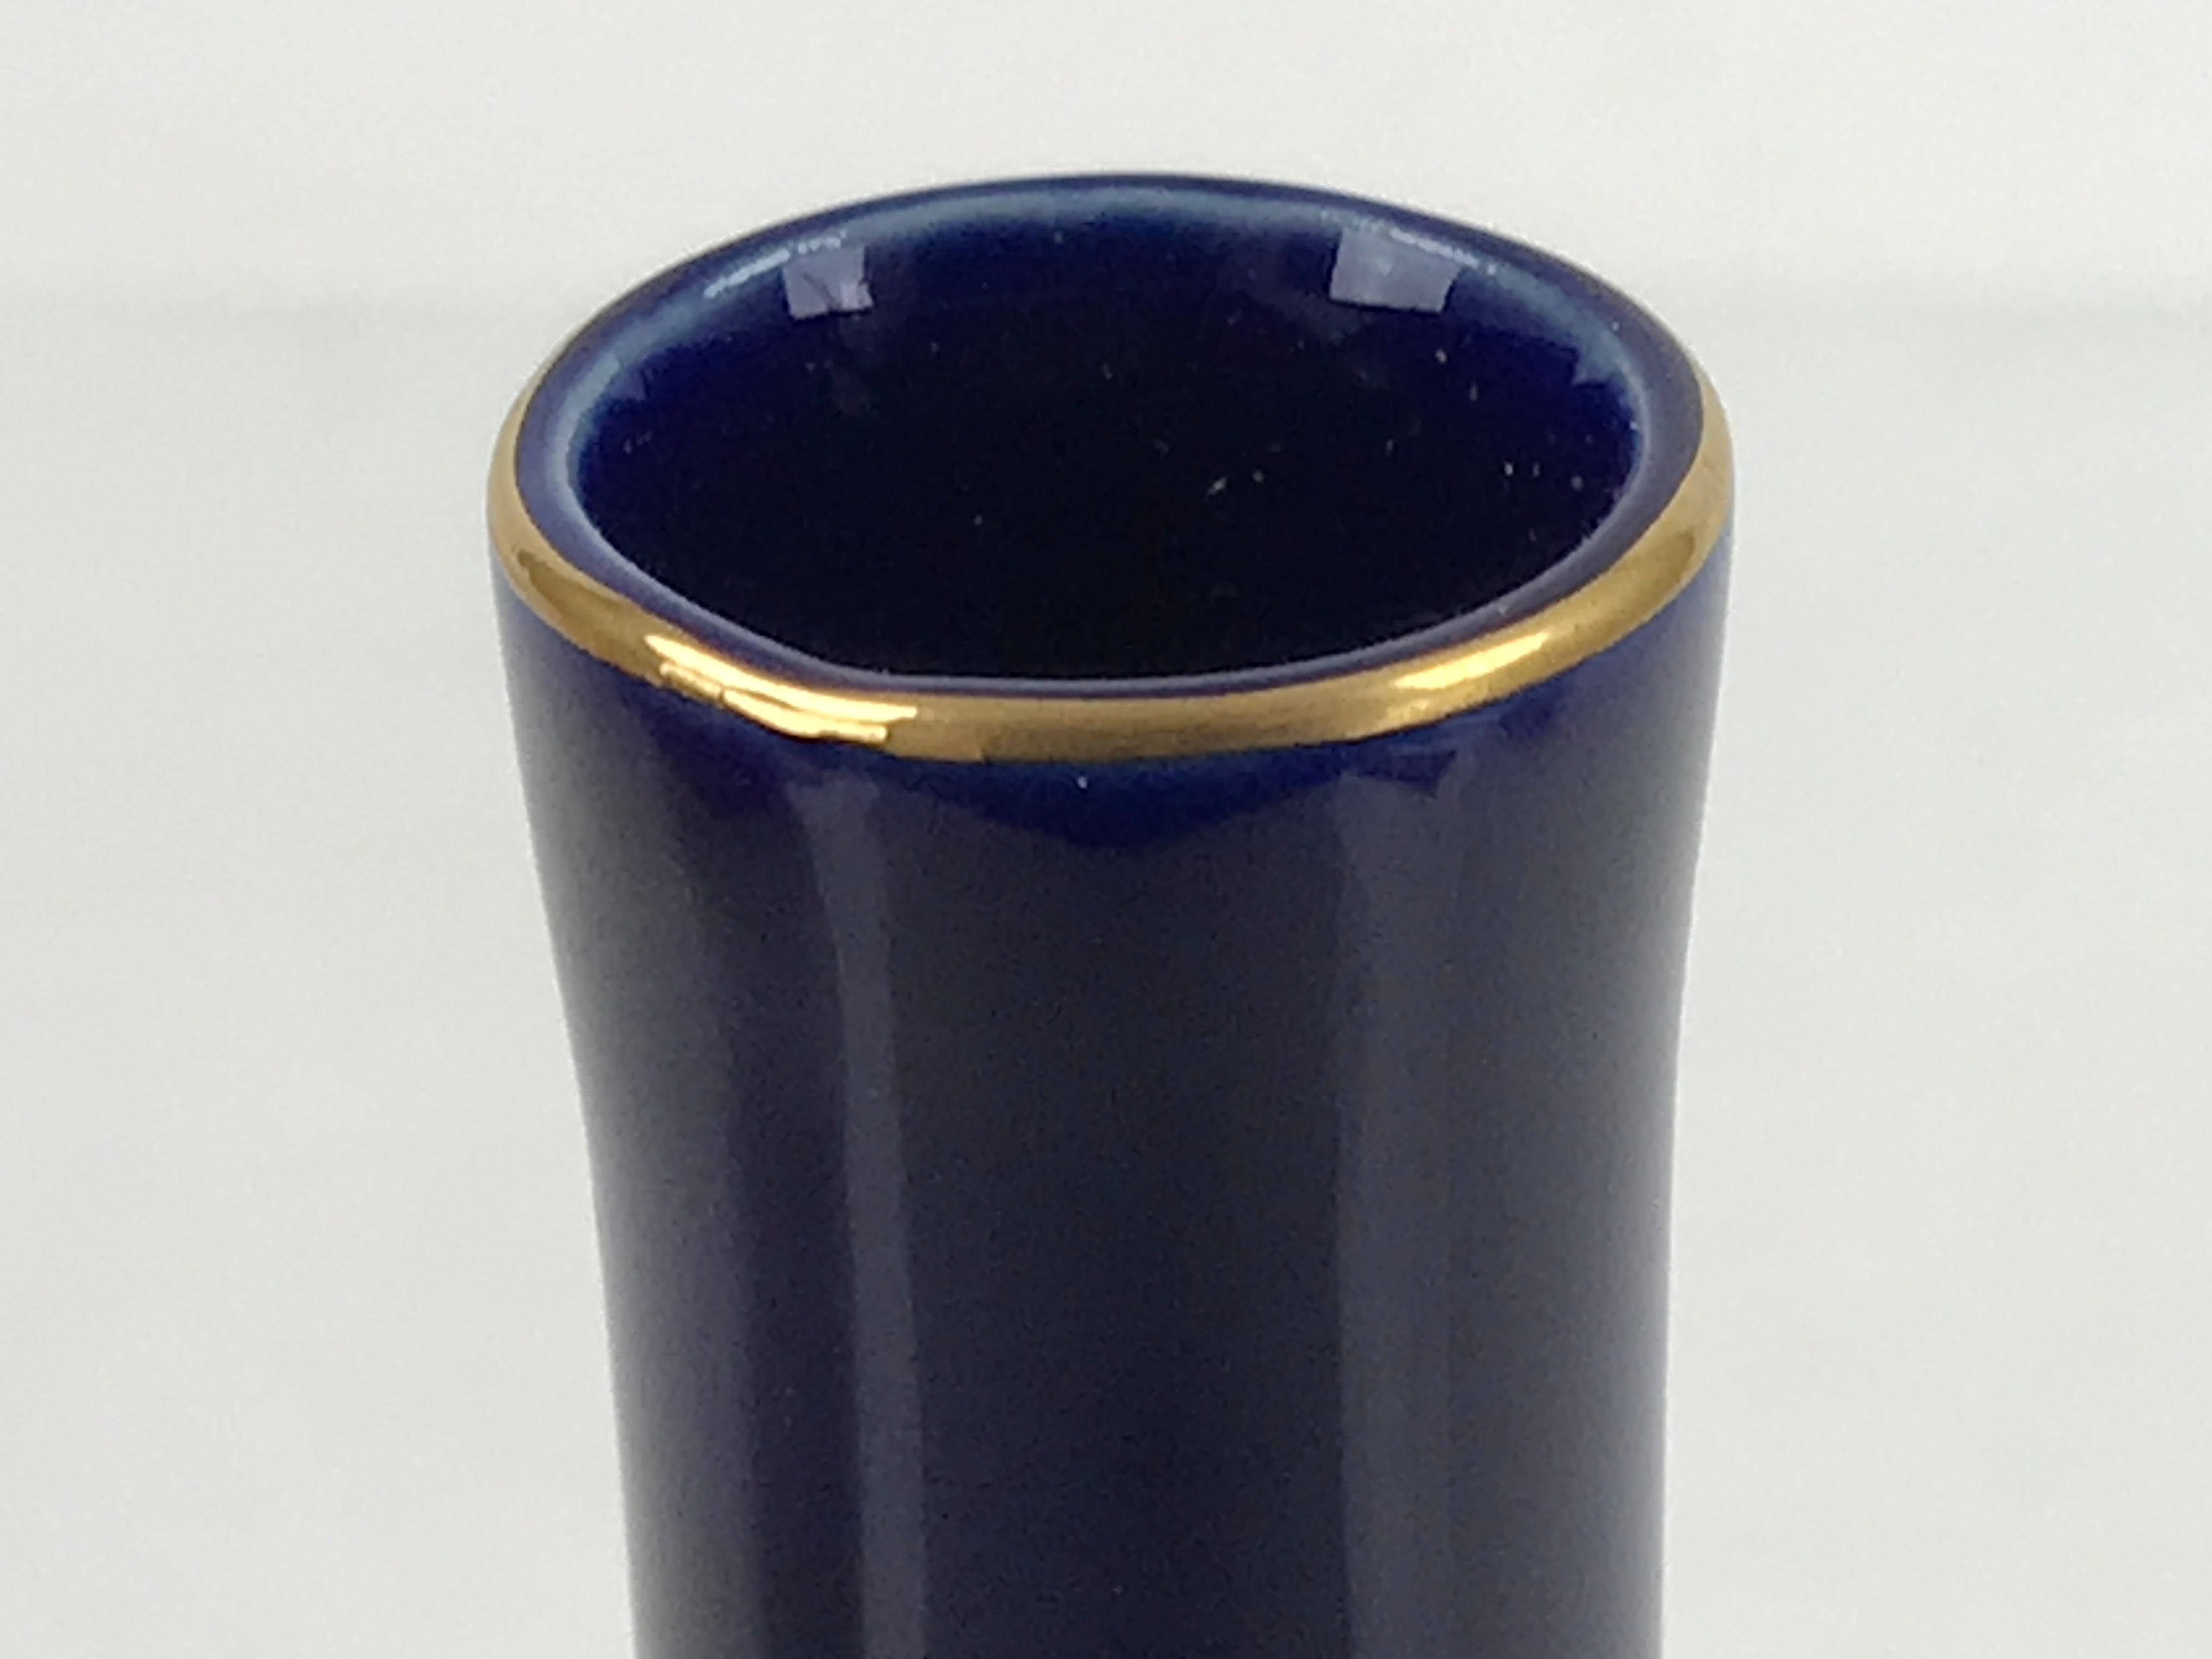 Japanese Porcelain Flower Vase Vtg Crane Long Dark Blue Gold Green W/ Box PX737